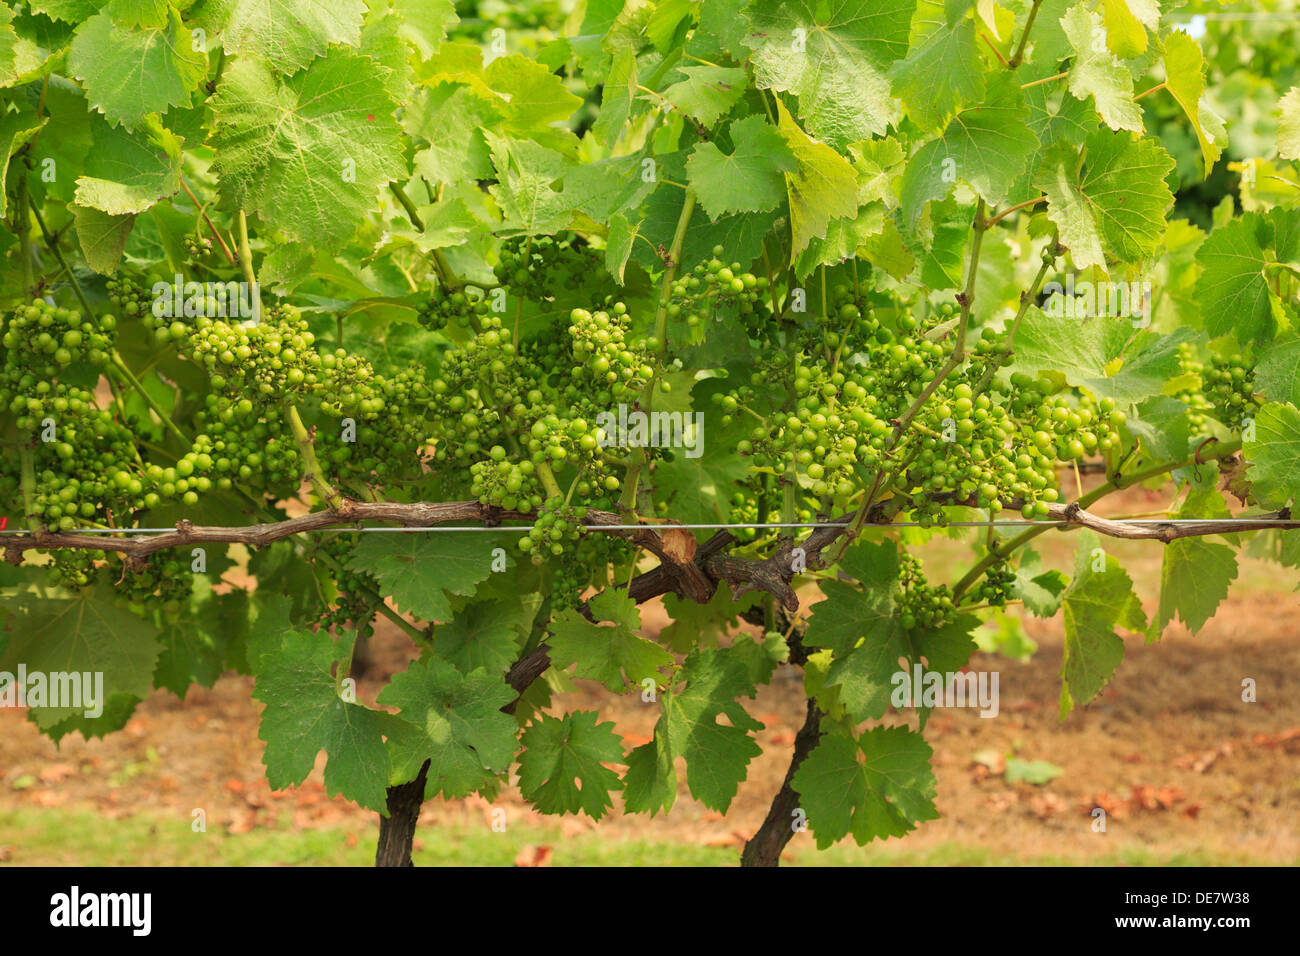 Le mûrissement des grappes de raisins pour le vin blanc sur les vignes dans un vignoble à la fin de l'été à Cranbrook, Kent, Angleterre, Royaume-Uni, Angleterre Banque D'Images